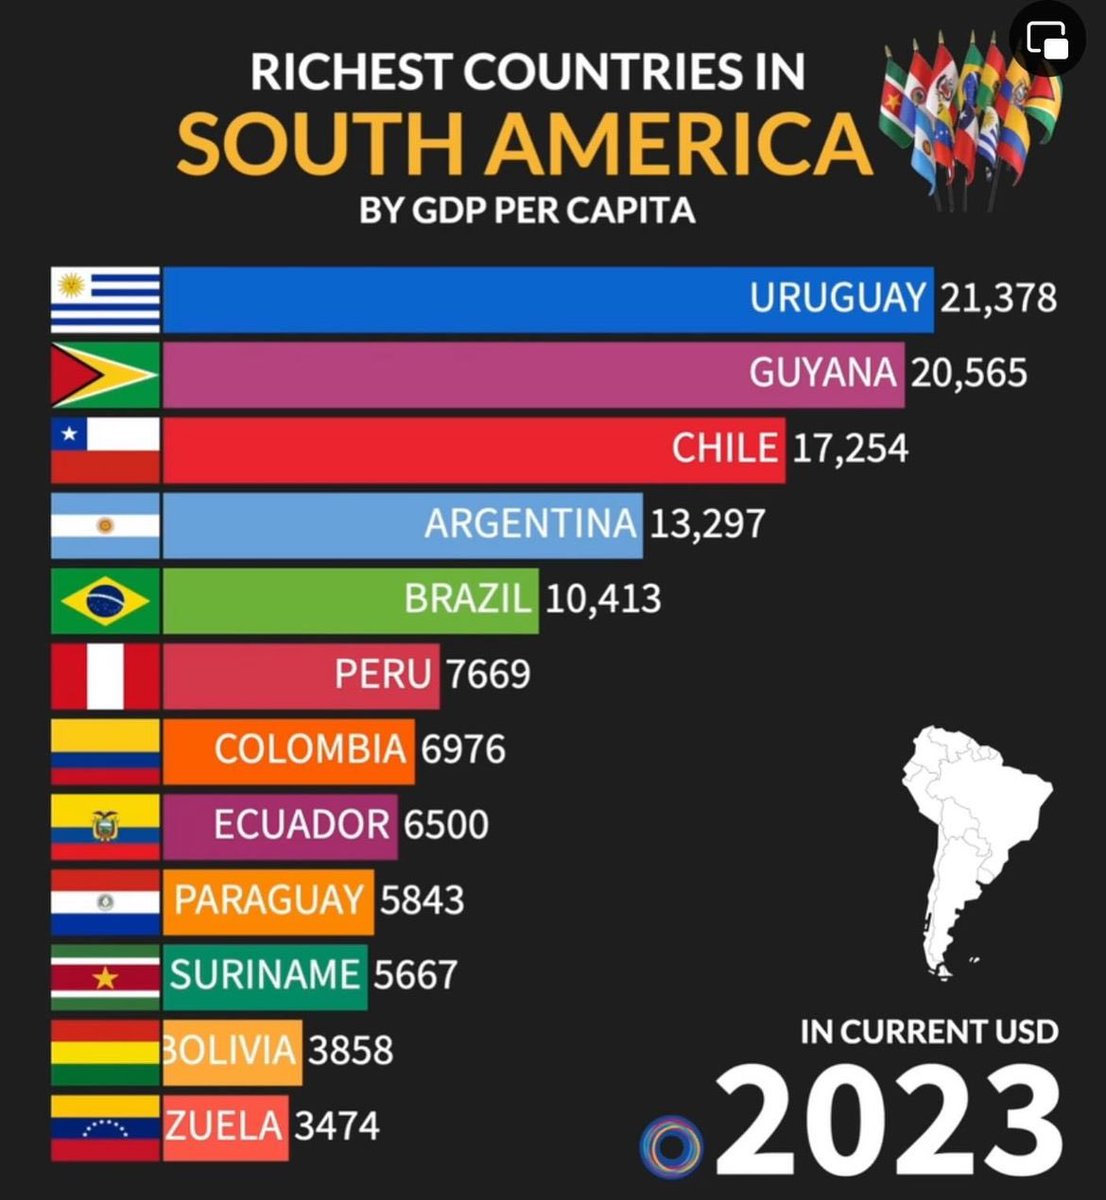 El legado del chavismo. Convirtieron a Venezuela en el país más pobre de Sudamérica. 
#chavismoesmiseria